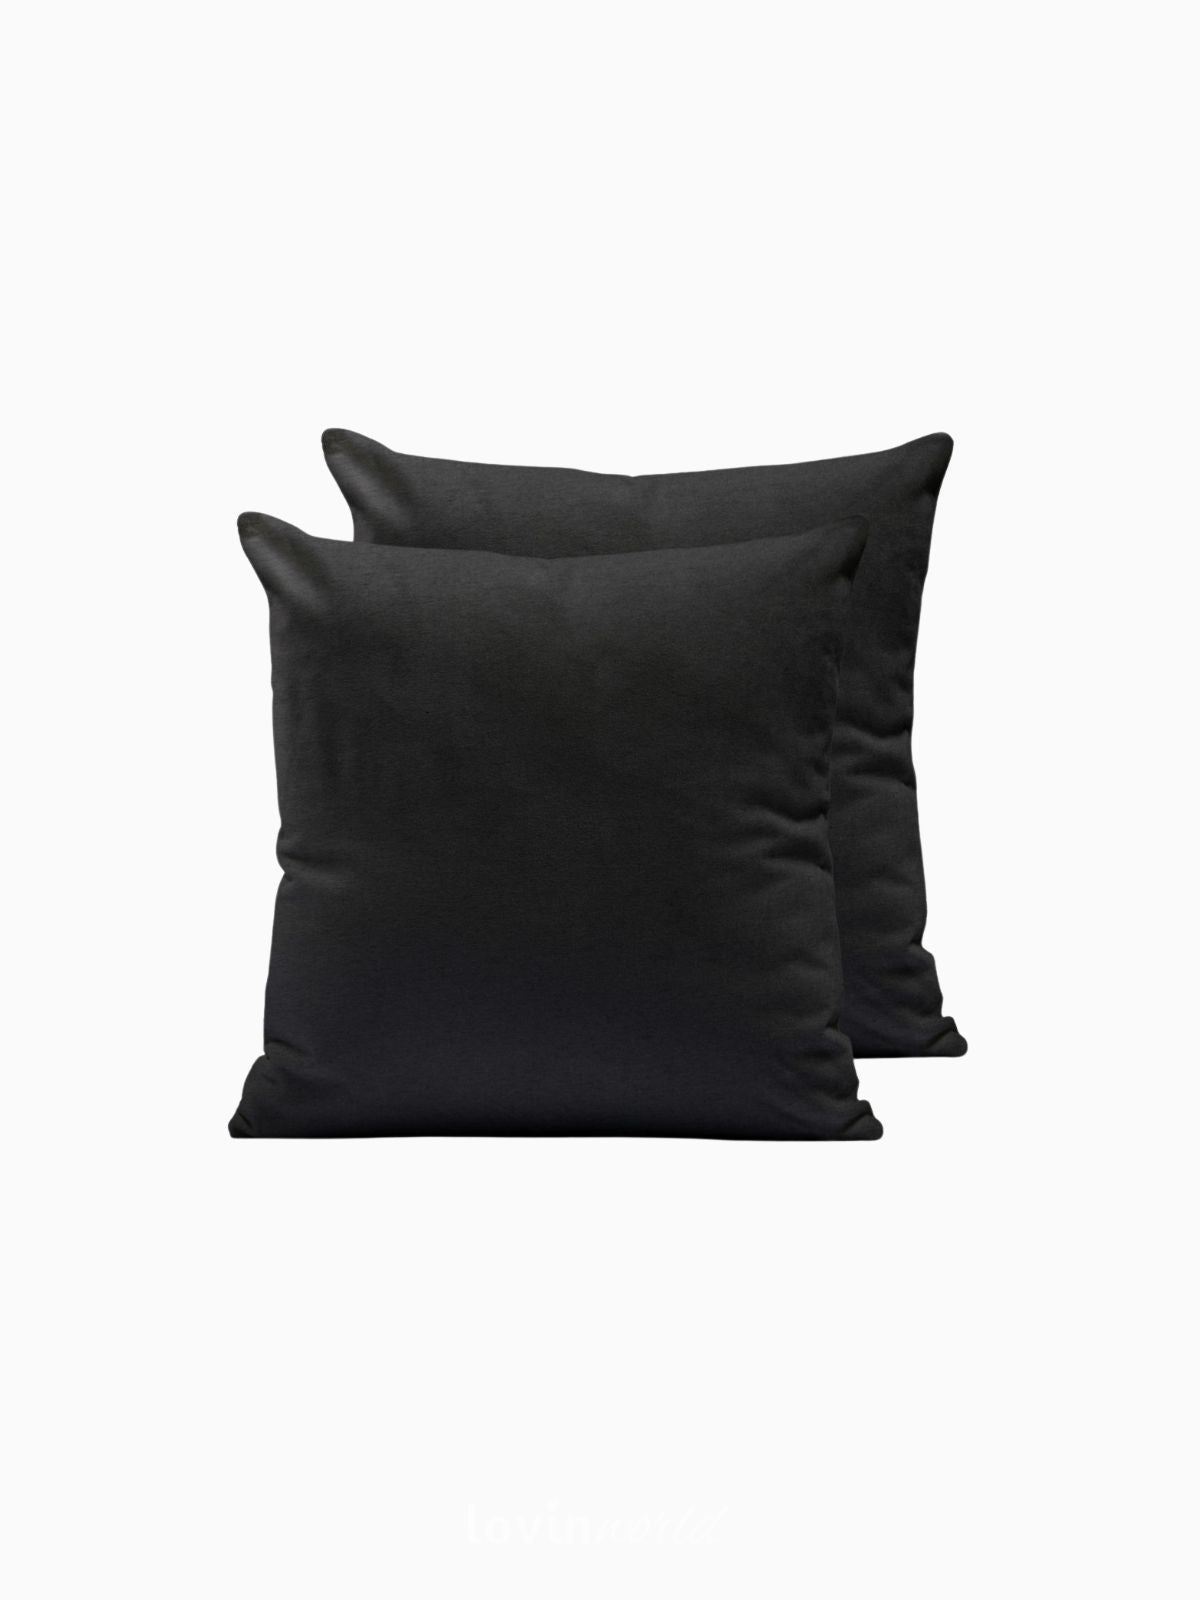 2 Federe per cuscino Amber in colore nero 50x50 cm.